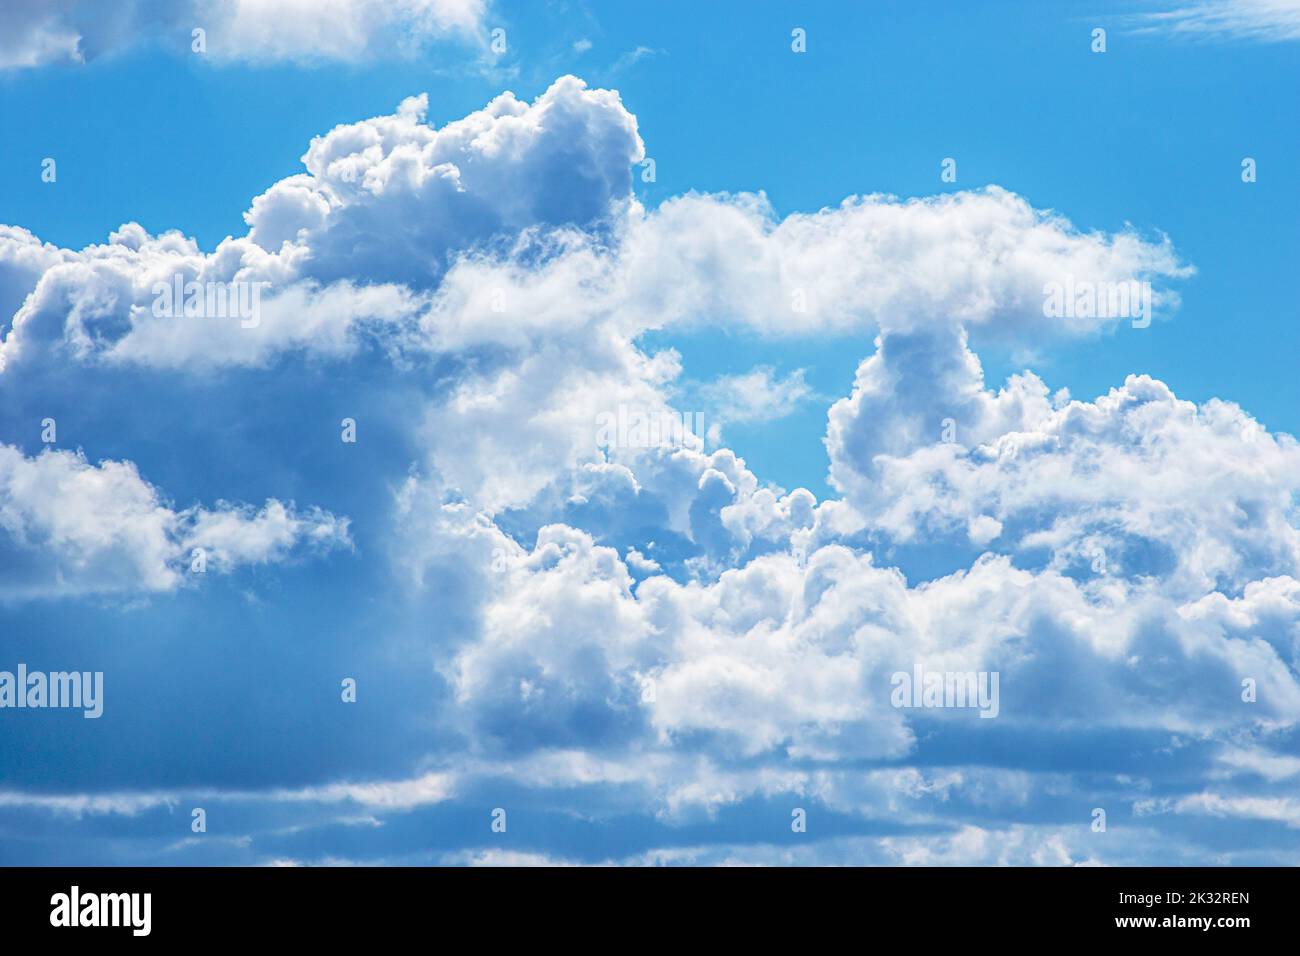 Image phénomène naturel ciel bleu avec des nuages blancs Banque D'Images